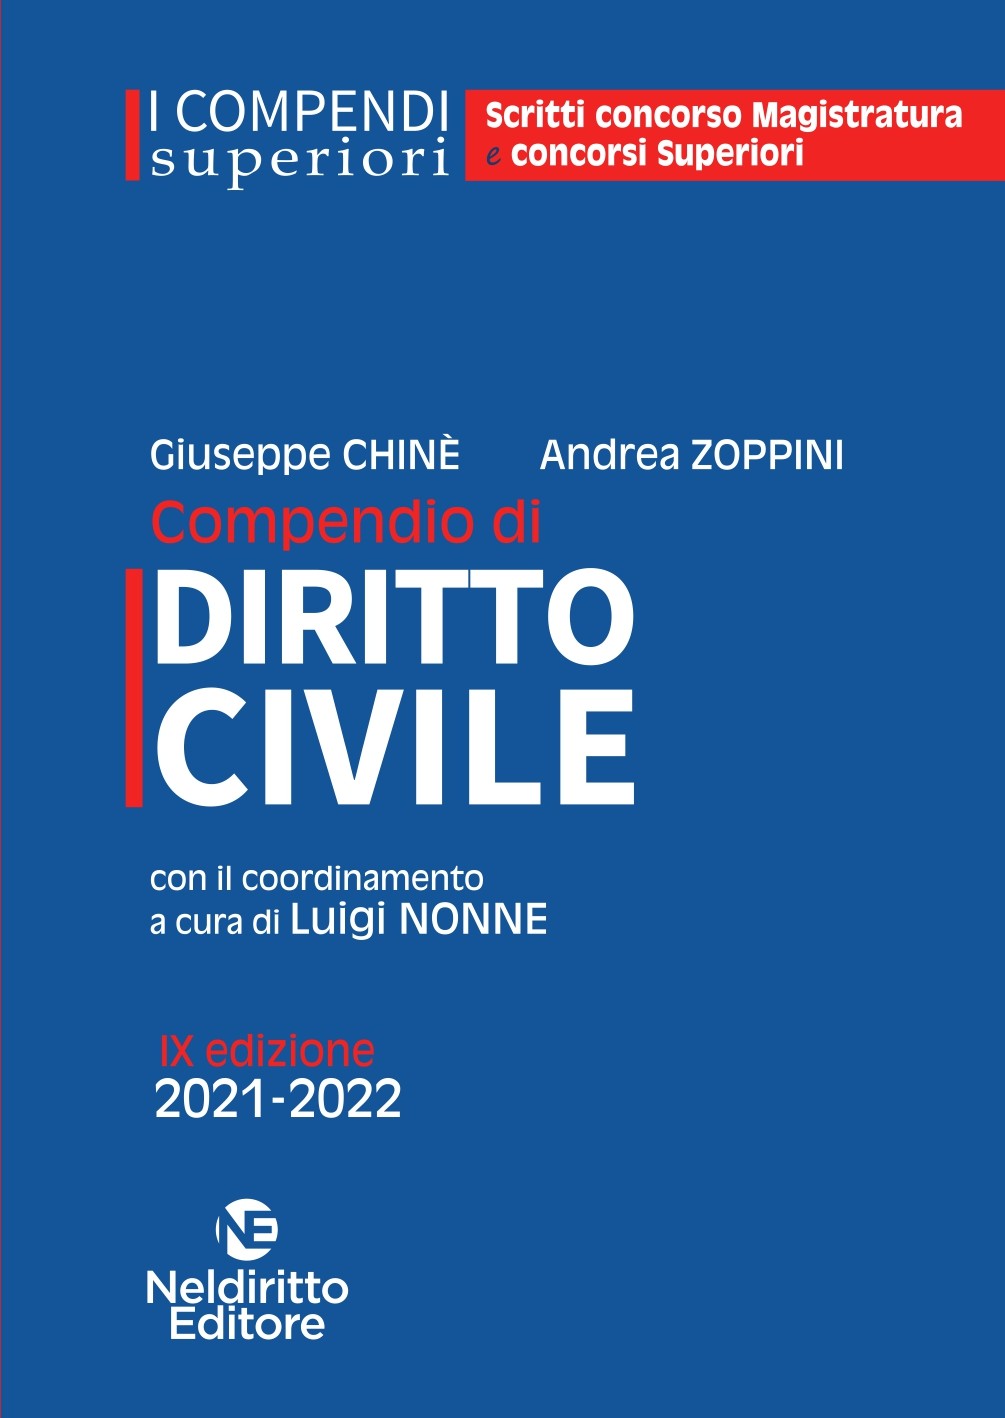 CONCORSO MAGISTRATURA Compendio Superiore di Diritto Civile 2021/2022